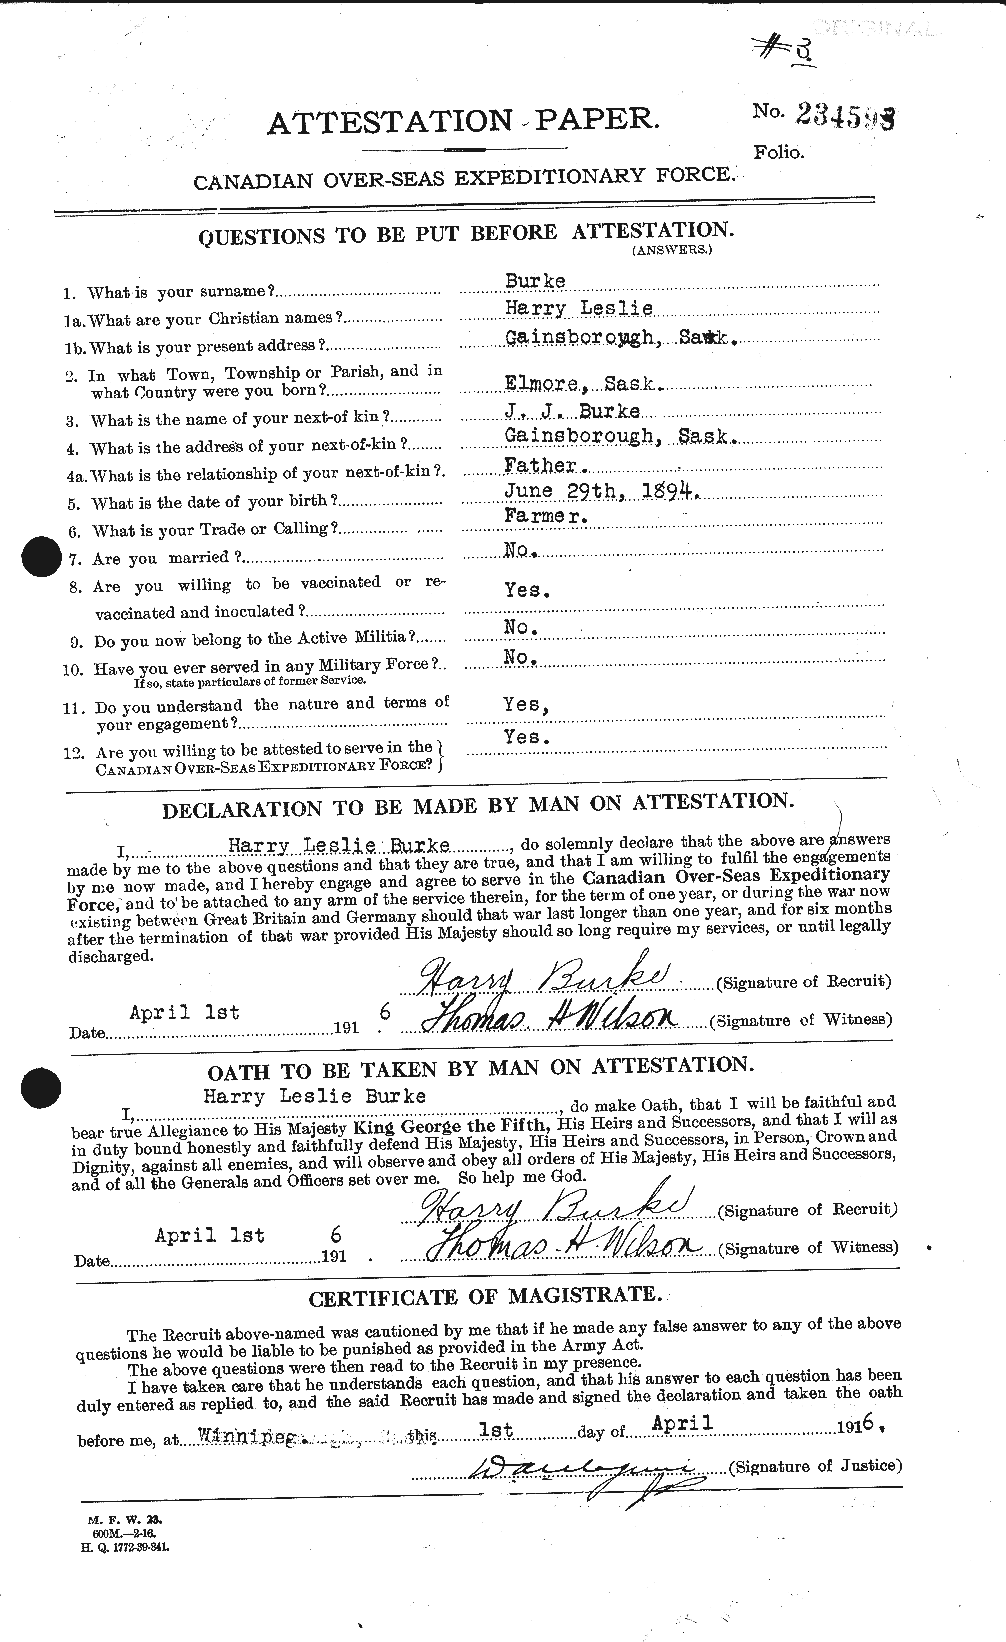 Dossiers du Personnel de la Première Guerre mondiale - CEC 272511a